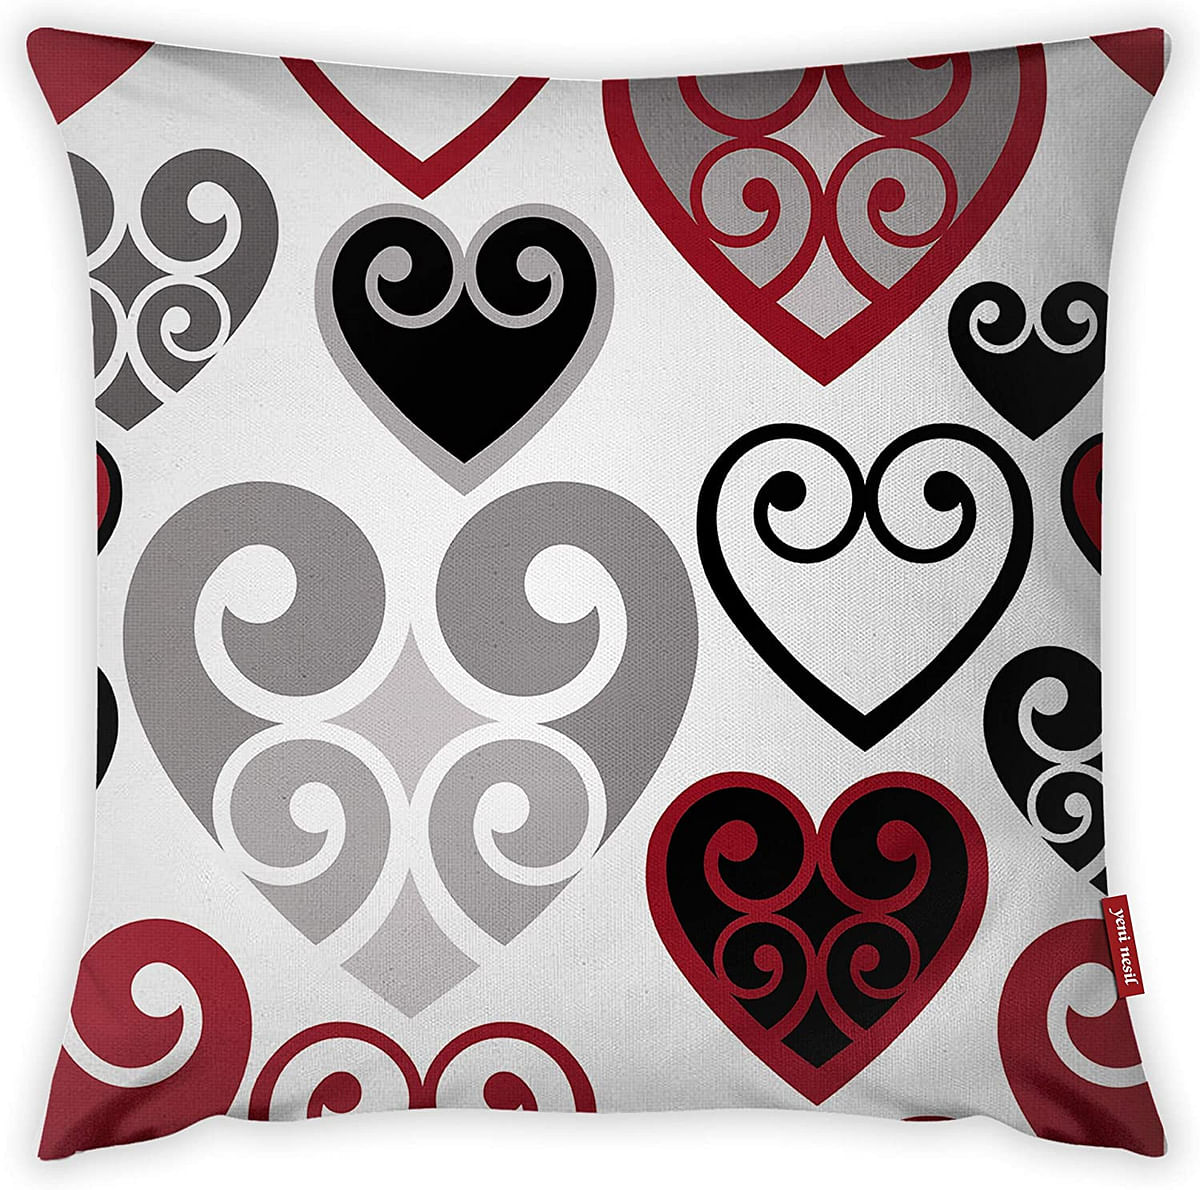 Mon Desire Decorative Throw Pillow Cover, Multi-Colour, 44 x 44 cm, MDSYST2987